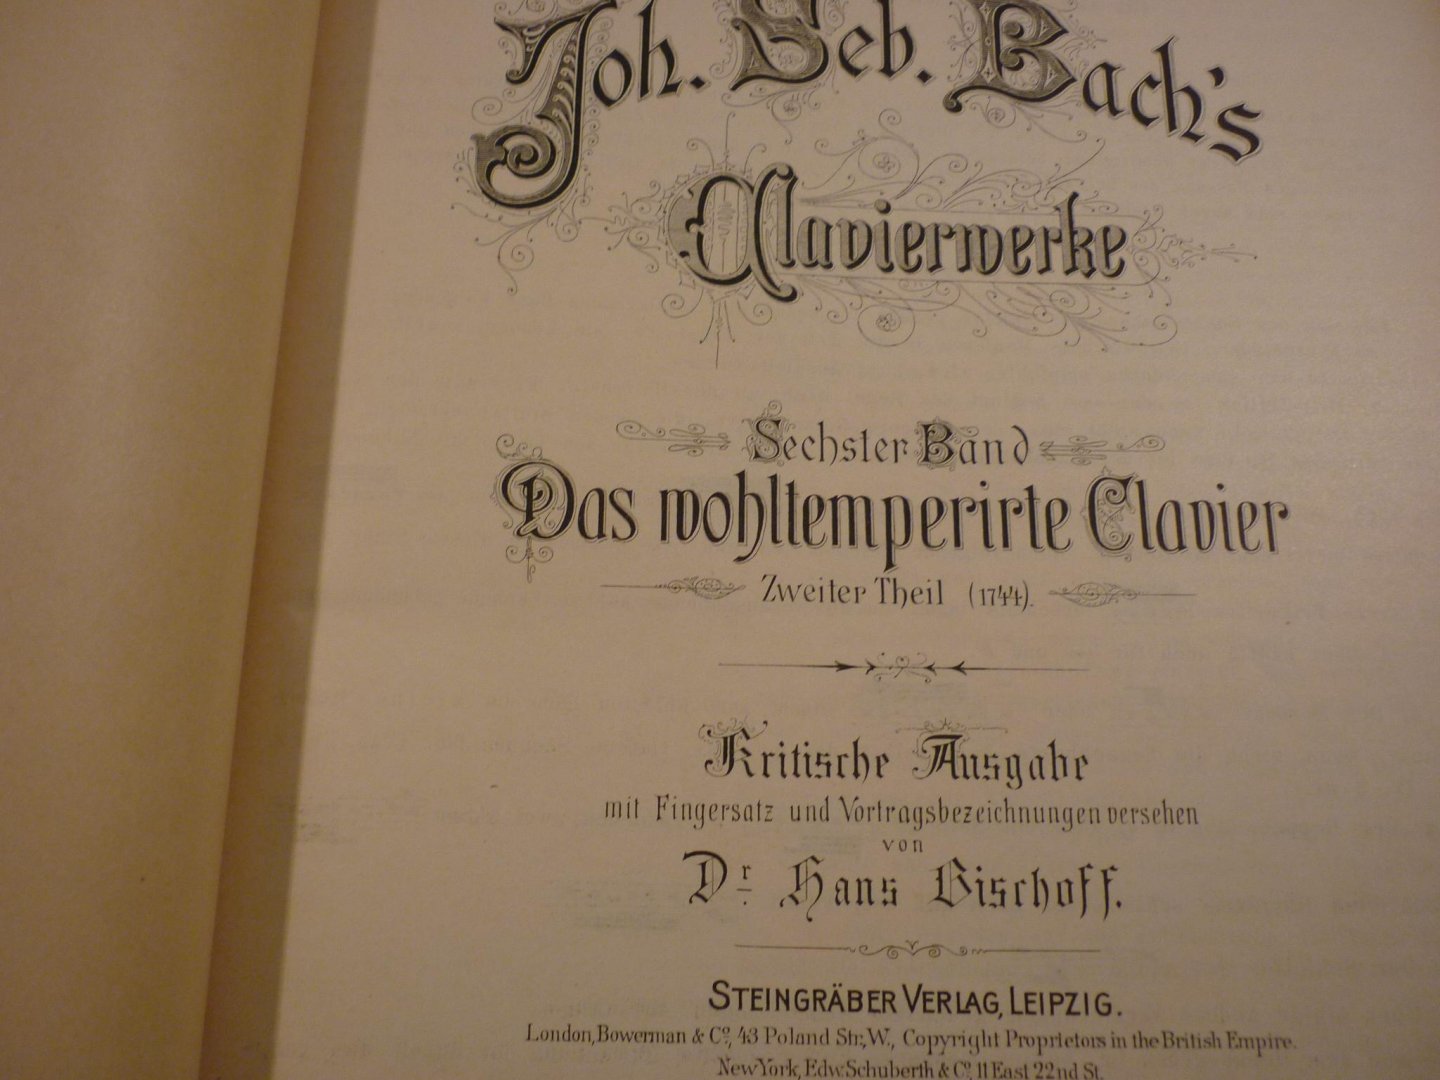 Bach; J. S. (1685-1750) - Klavierwerke; Band 6 - Das Wohltemperirte Clavier - Zweiter Theil (1744); Krititsche Ausgabe mit Fingersatz und Vortragsbezeichnungen versehen von Dr. Hans Bischoff (Berlin, Juni 1884) voor Piano - Originele unieke uitgave!